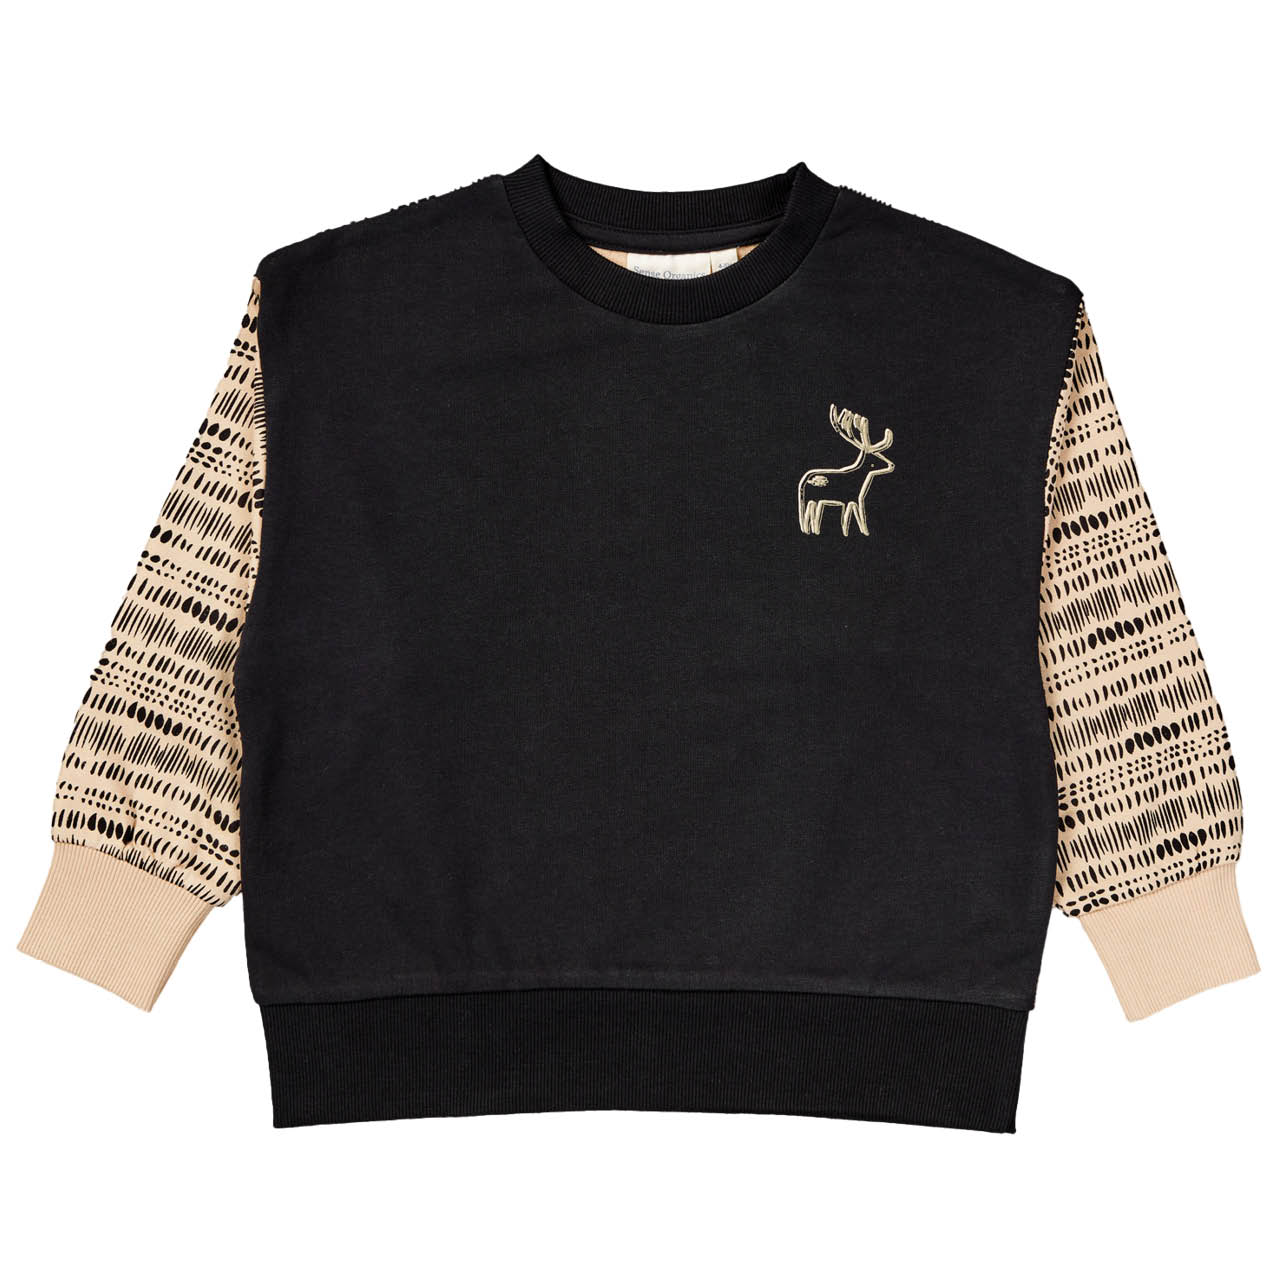 Robuster Sweater Strichmuster schwarz